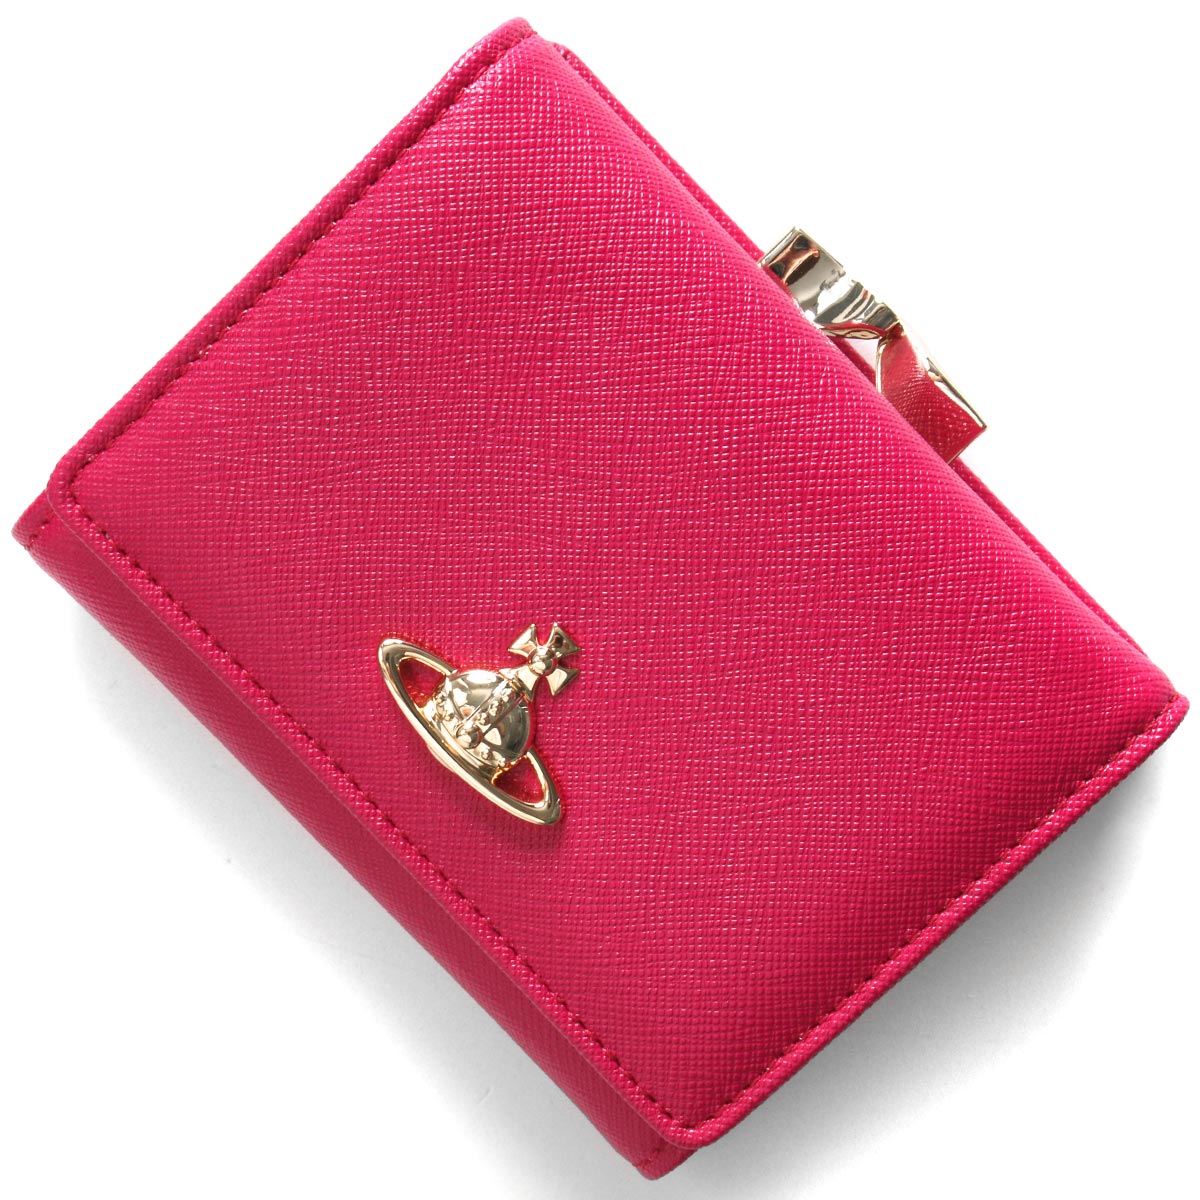 【新品未使用】ヴィヴィアンウエストウッド ピンク 三つ折財布  ミニ財布